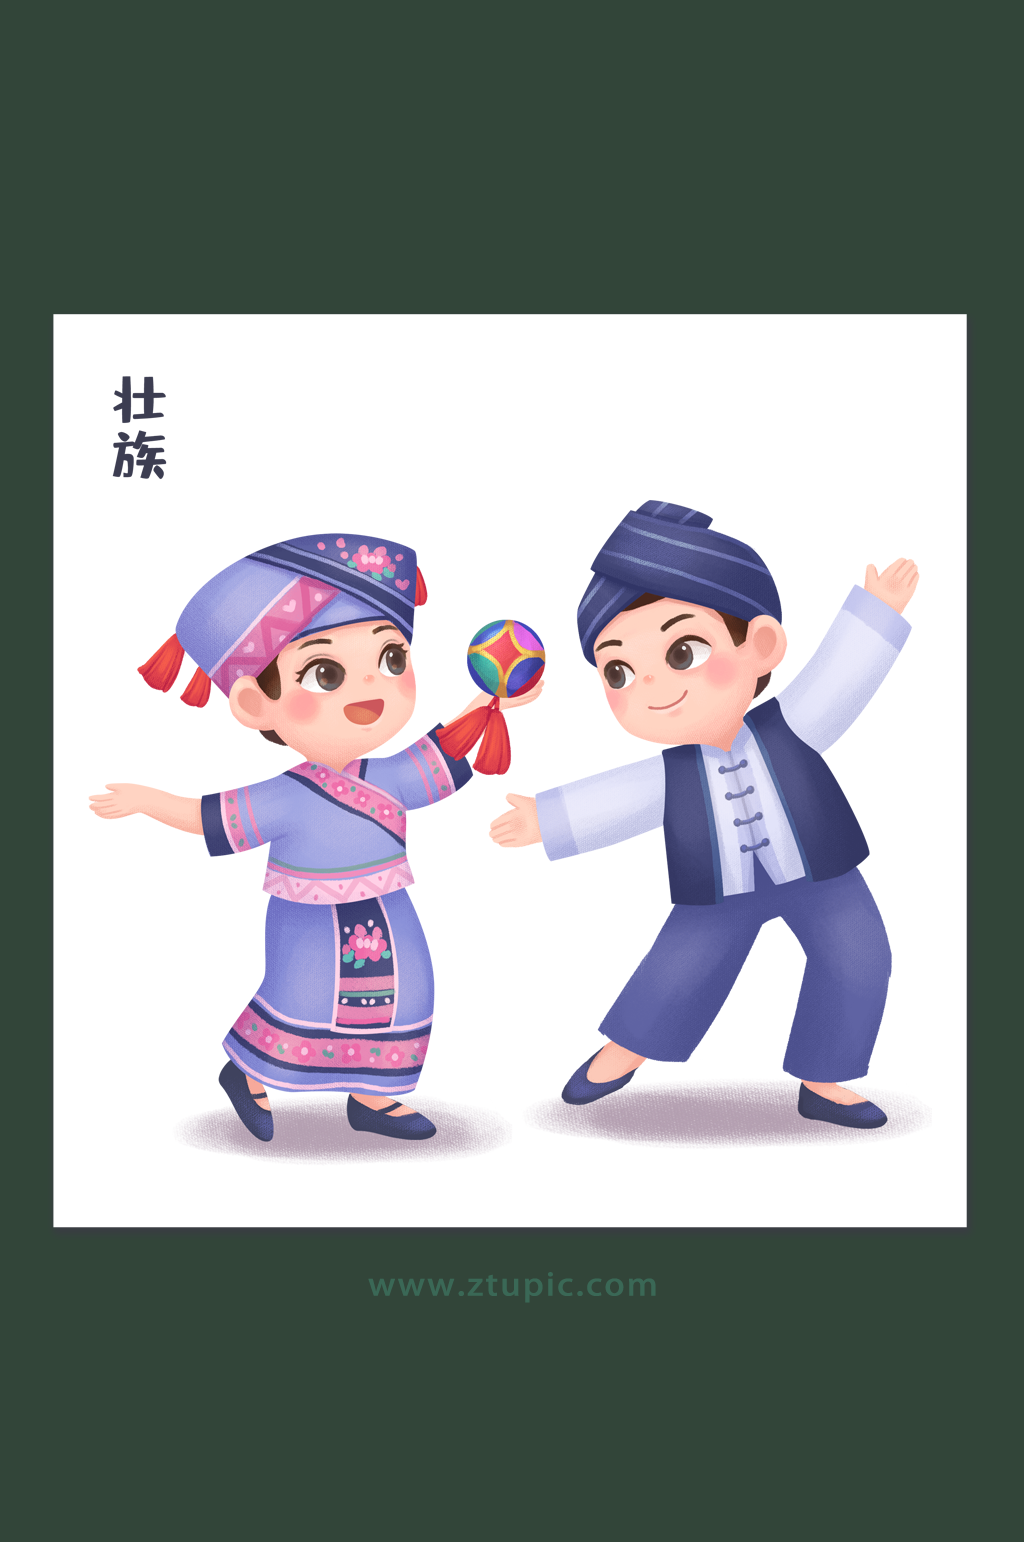 民族团结中华少数民族壮族文化插画设计素材